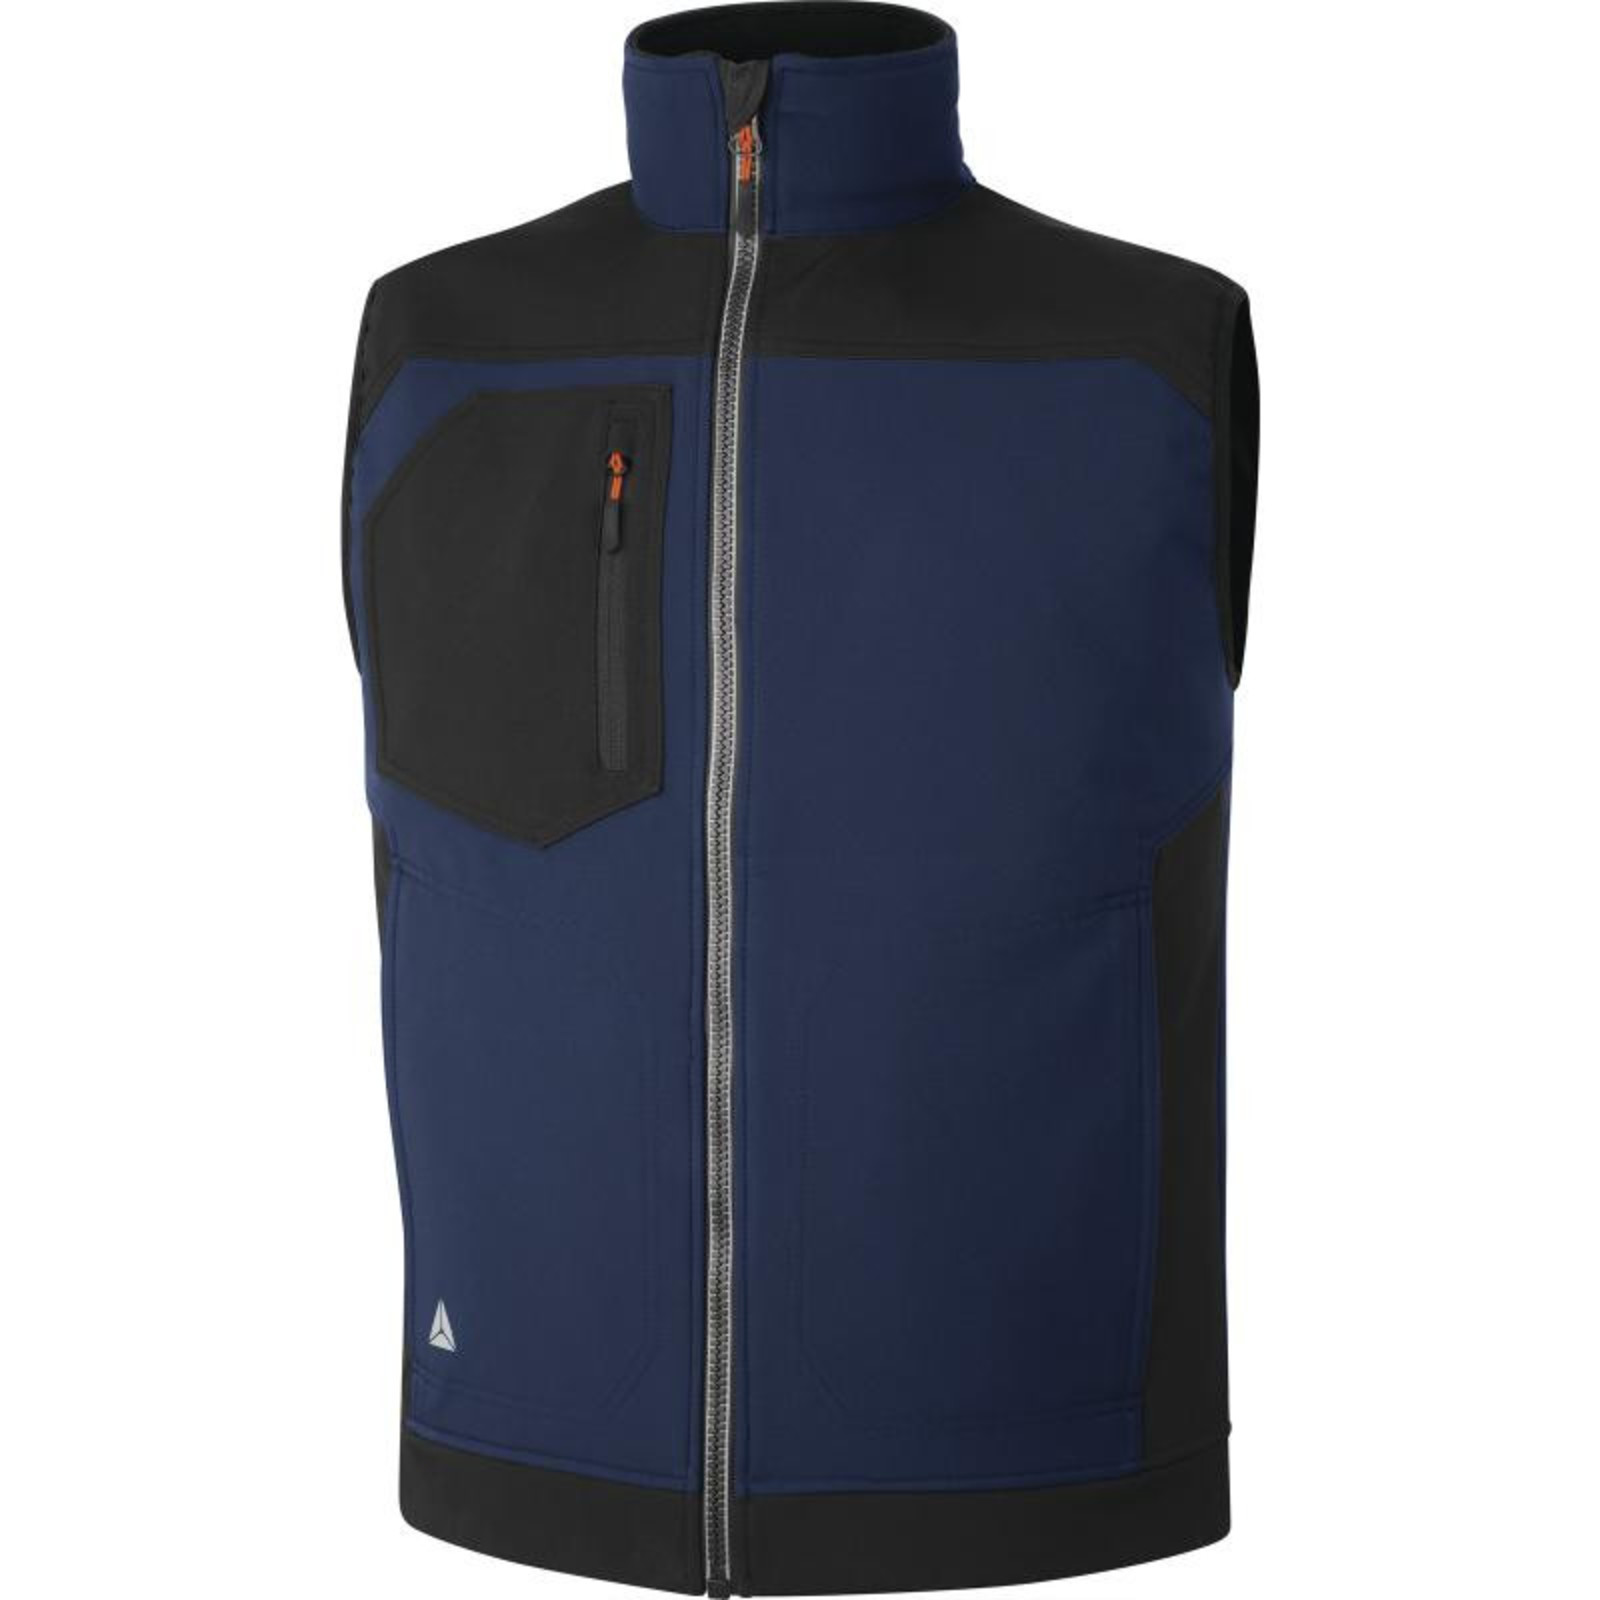 Softshellová vesta Delta Plus Holen - veľkosť: L, farba: námornícka modrá/čierna